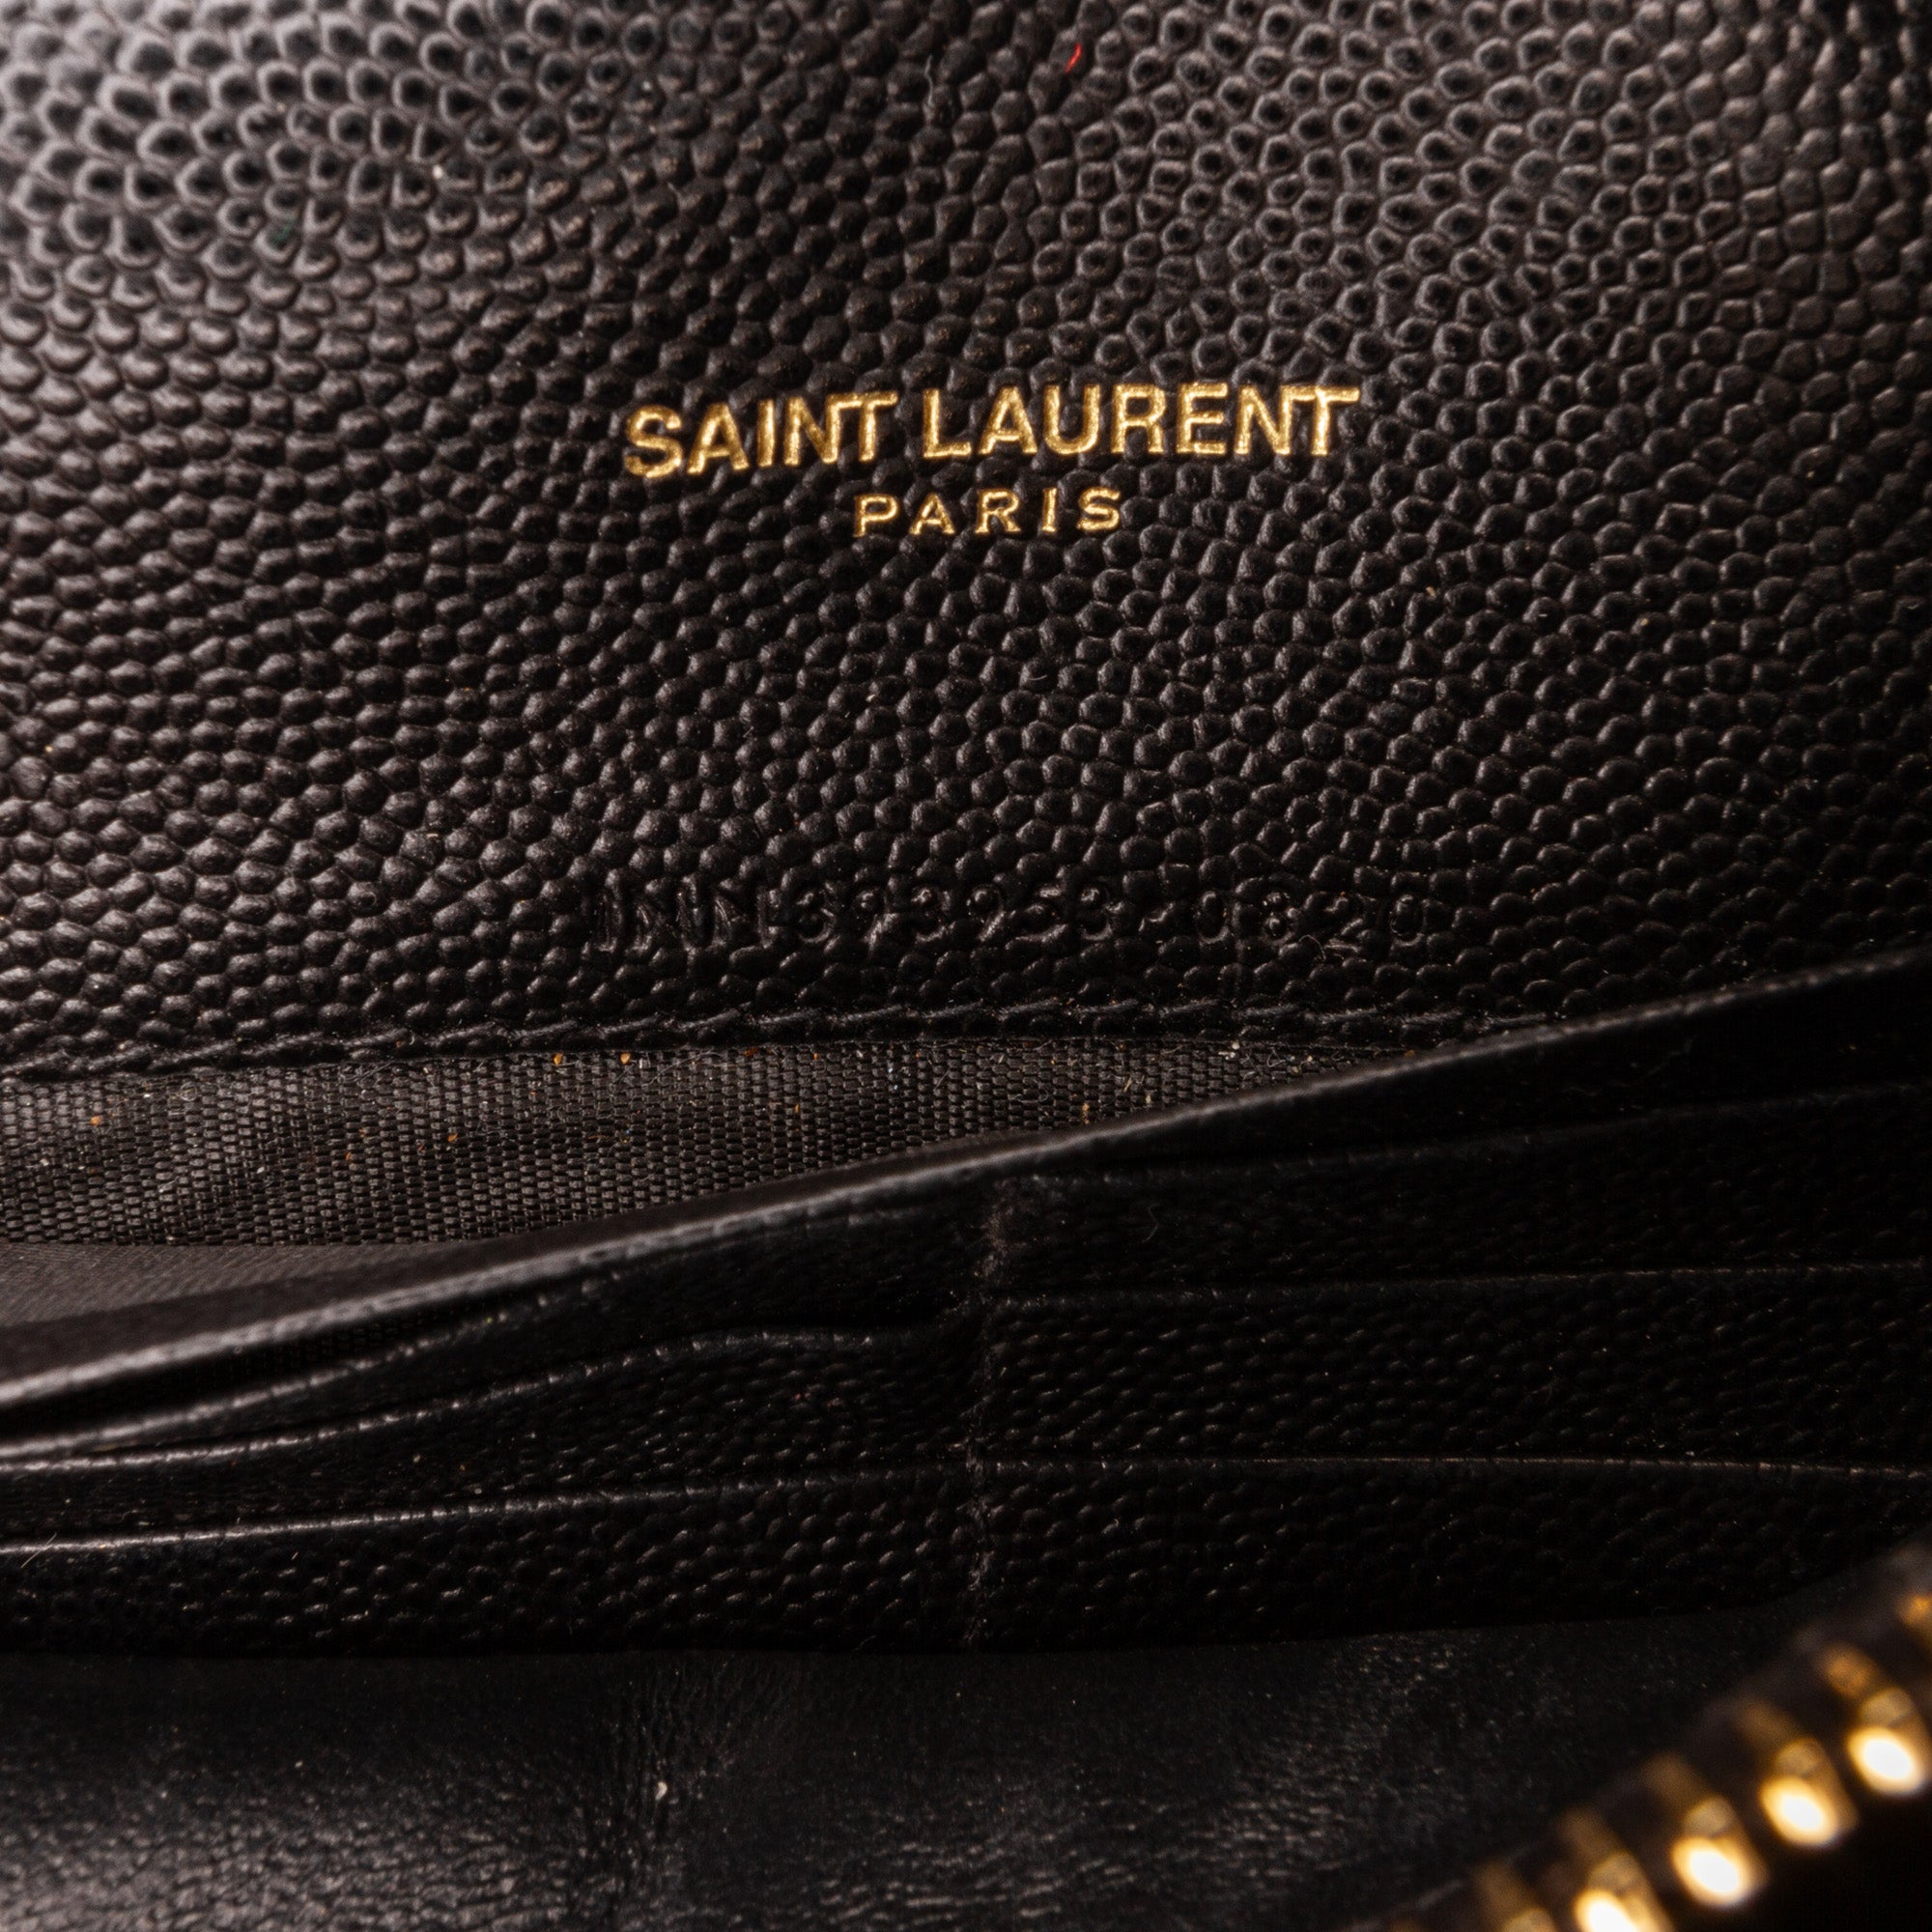 Saint Laurent Paris Black Chevron Leather Classic Monogram